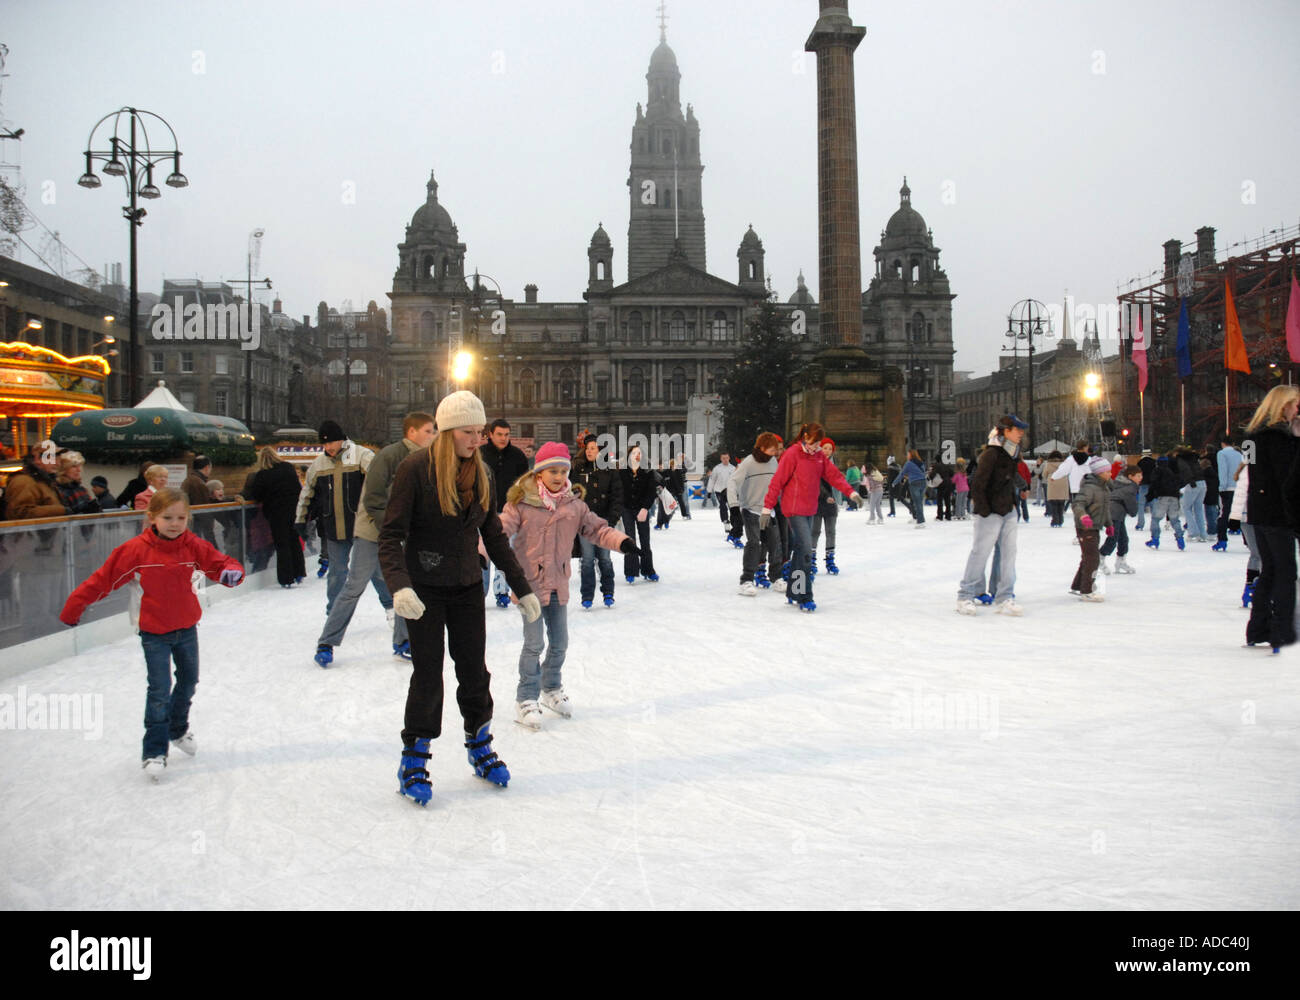 Patin à glace sur la patinoire de plein air, George Square. Les chambres de la ville en arrière-plan. Glasgow. L'Écosse. Xmas Banque D'Images